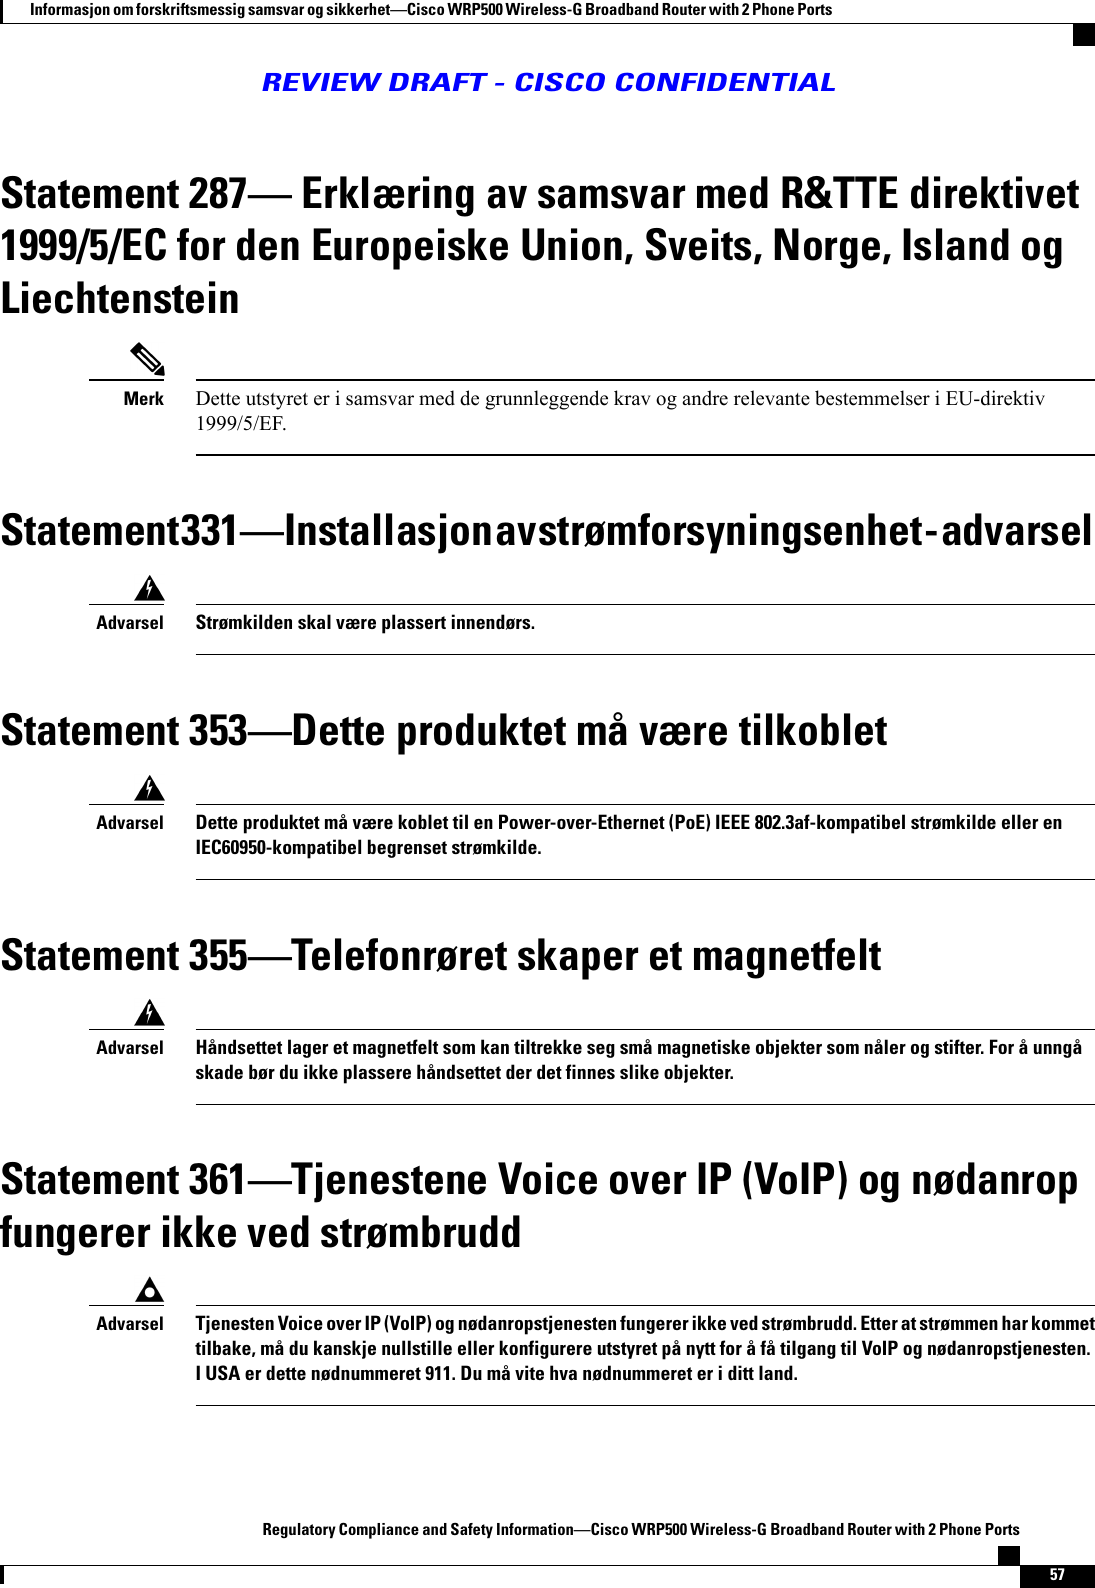 Statement 287 Erklæring av samsvar med R&amp;TTE direktivet1999/5/EC for den Europeiske Union, Sveits, Norge, Island ogLiechtensteinDette utstyret er i samsvar med de grunnleggende krav og andre relevante bestemmelser i EU-direktiv1999/5/EF.MerkStatement 331Installasjon av strømforsyningsenhet - advarselStrømkilden skal være plassert innendørs.AdvarselStatement 353Dette produktet må være tilkobletDette produktet må være koblet til en Power-over-Ethernet (PoE) IEEE 802.3af-kompatibel strømkilde eller enIEC60950-kompatibel begrenset strømkilde.AdvarselStatement 355Telefonrøret skaper et magnetfeltHåndsettet lager et magnetfelt som kan tiltrekke seg små magnetiske objekter som nåler og stifter. For å unngåskade bør du ikke plassere håndsettet der det finnes slike objekter.AdvarselStatement 361Tjenestene Voice over IP (VoIP) og nødanropfungerer ikke ved strømbruddTjenesten Voice over IP (VoIP) og nødanropstjenesten fungerer ikke ved strømbrudd. Etter at strømmen har kommettilbake, må du kanskje nullstille eller konfigurere utstyret på nytt for å få tilgang til VoIP og nødanropstjenesten.I USA er dette nødnummeret 911. Du må vite hva nødnummeret er i ditt land.AdvarselRegulatory Compliance and Safety InformationCisco WRP500 Wireless-G Broadband Router with 2 Phone Ports57Informasjon om forskriftsmessig samsvar og sikkerhetCisco WRP500 Wireless-G Broadband Router with 2 Phone PortsREVIEW DRAFT - CISCO CONFIDENTIAL